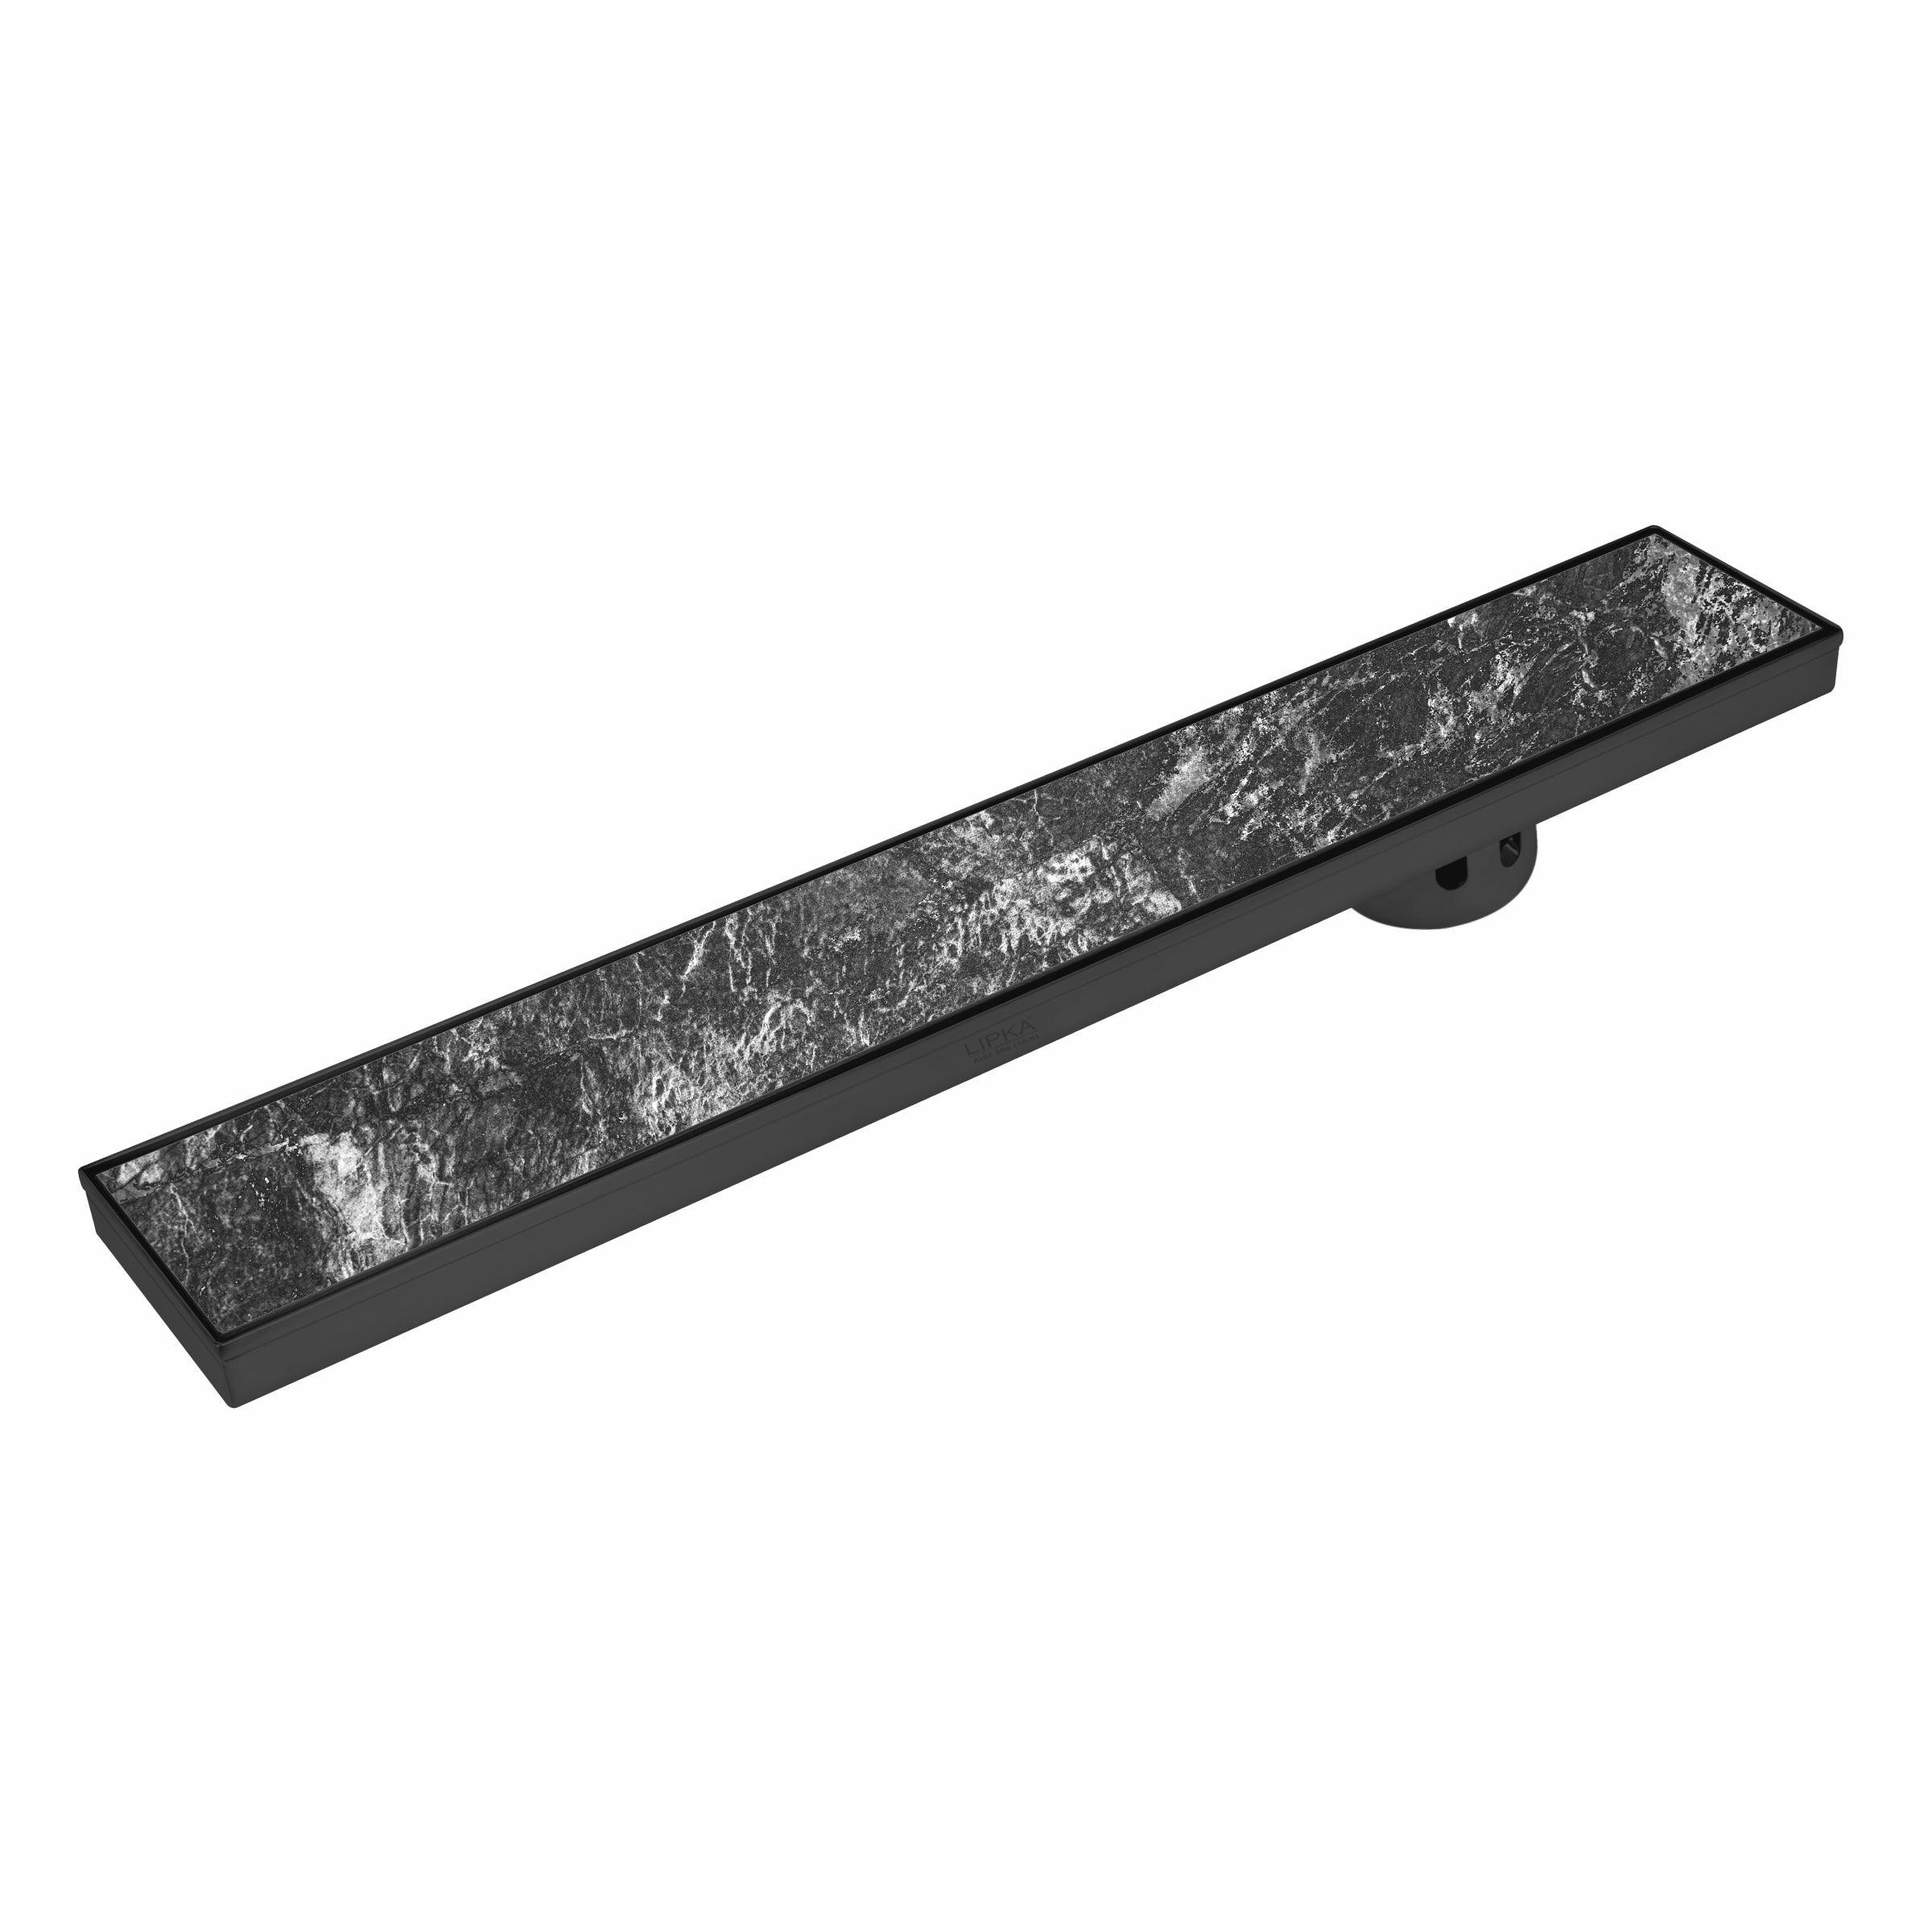 Tile Insert Shower Drain Channel - Black (48 x 4 Inches) - LIPKA - Lipka Home